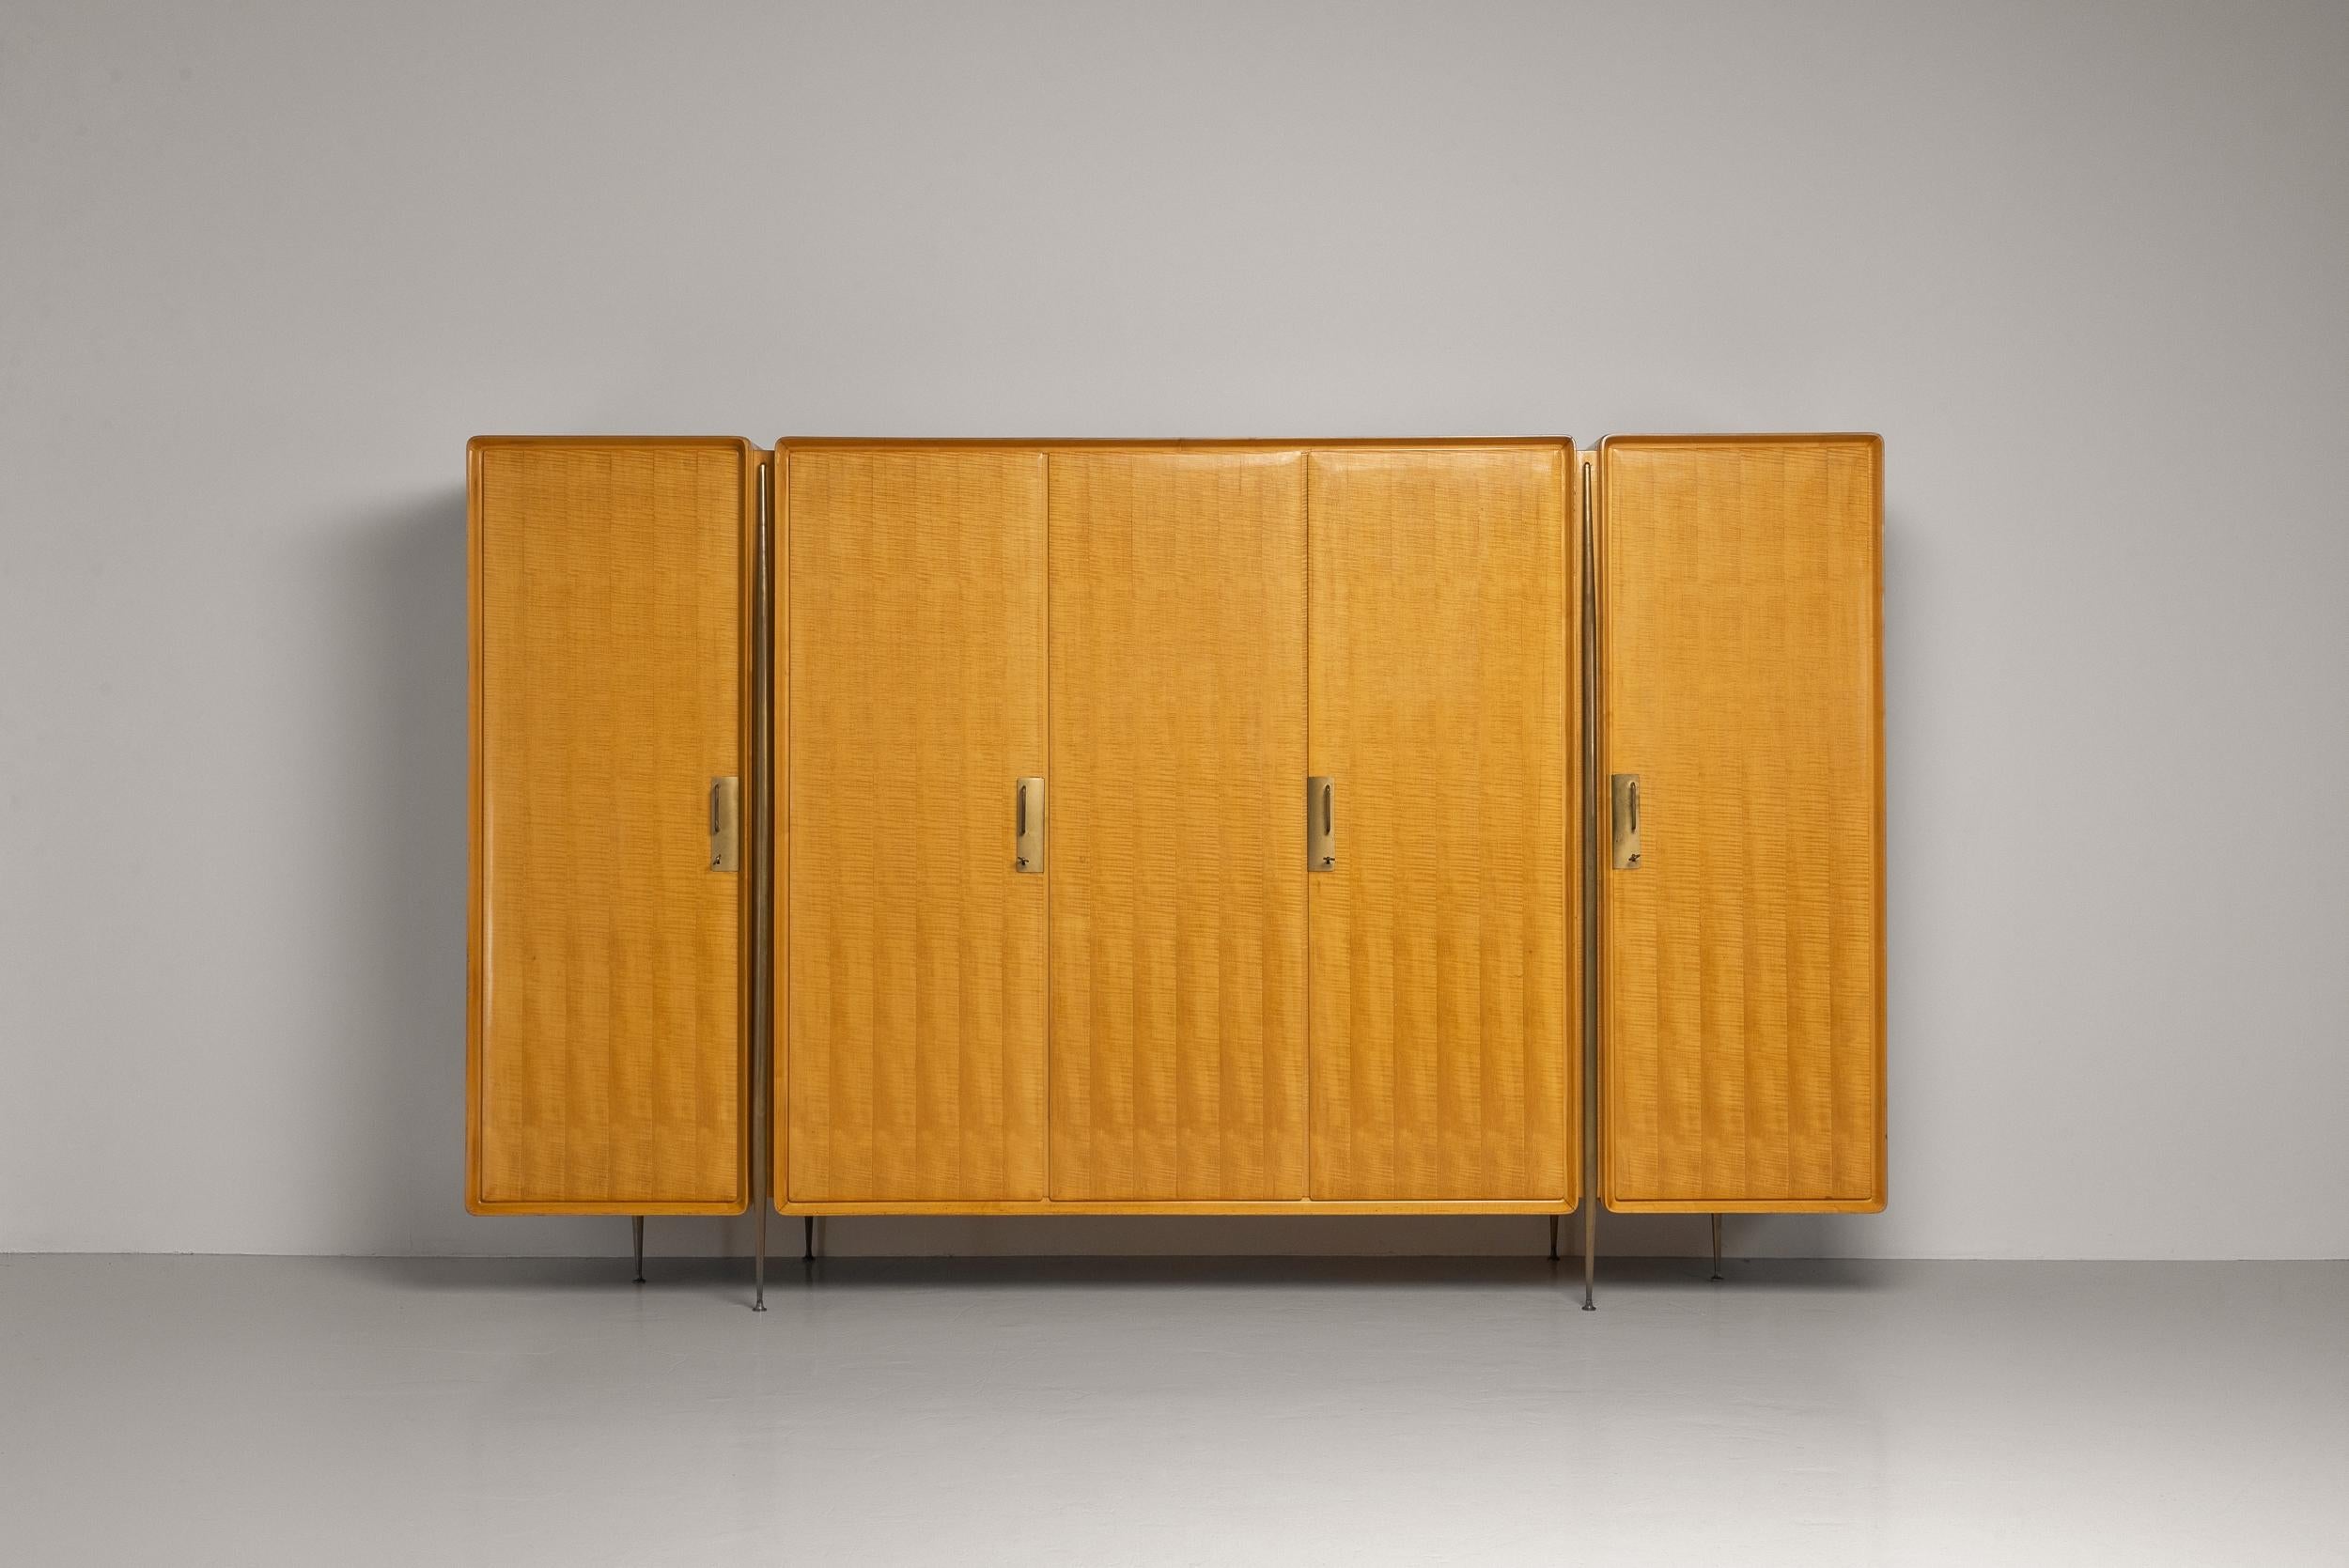 Außergewöhnlicher Kleiderschrank, entworfen von dem bekannten Möbeldesigner Silvio Cavatorta in Italien 1958. Dieser Schrank ist aus schönem Ahornholz gefertigt und hat eine glänzende Oberfläche, die ihm ein poliertes und anspruchsvolles Aussehen